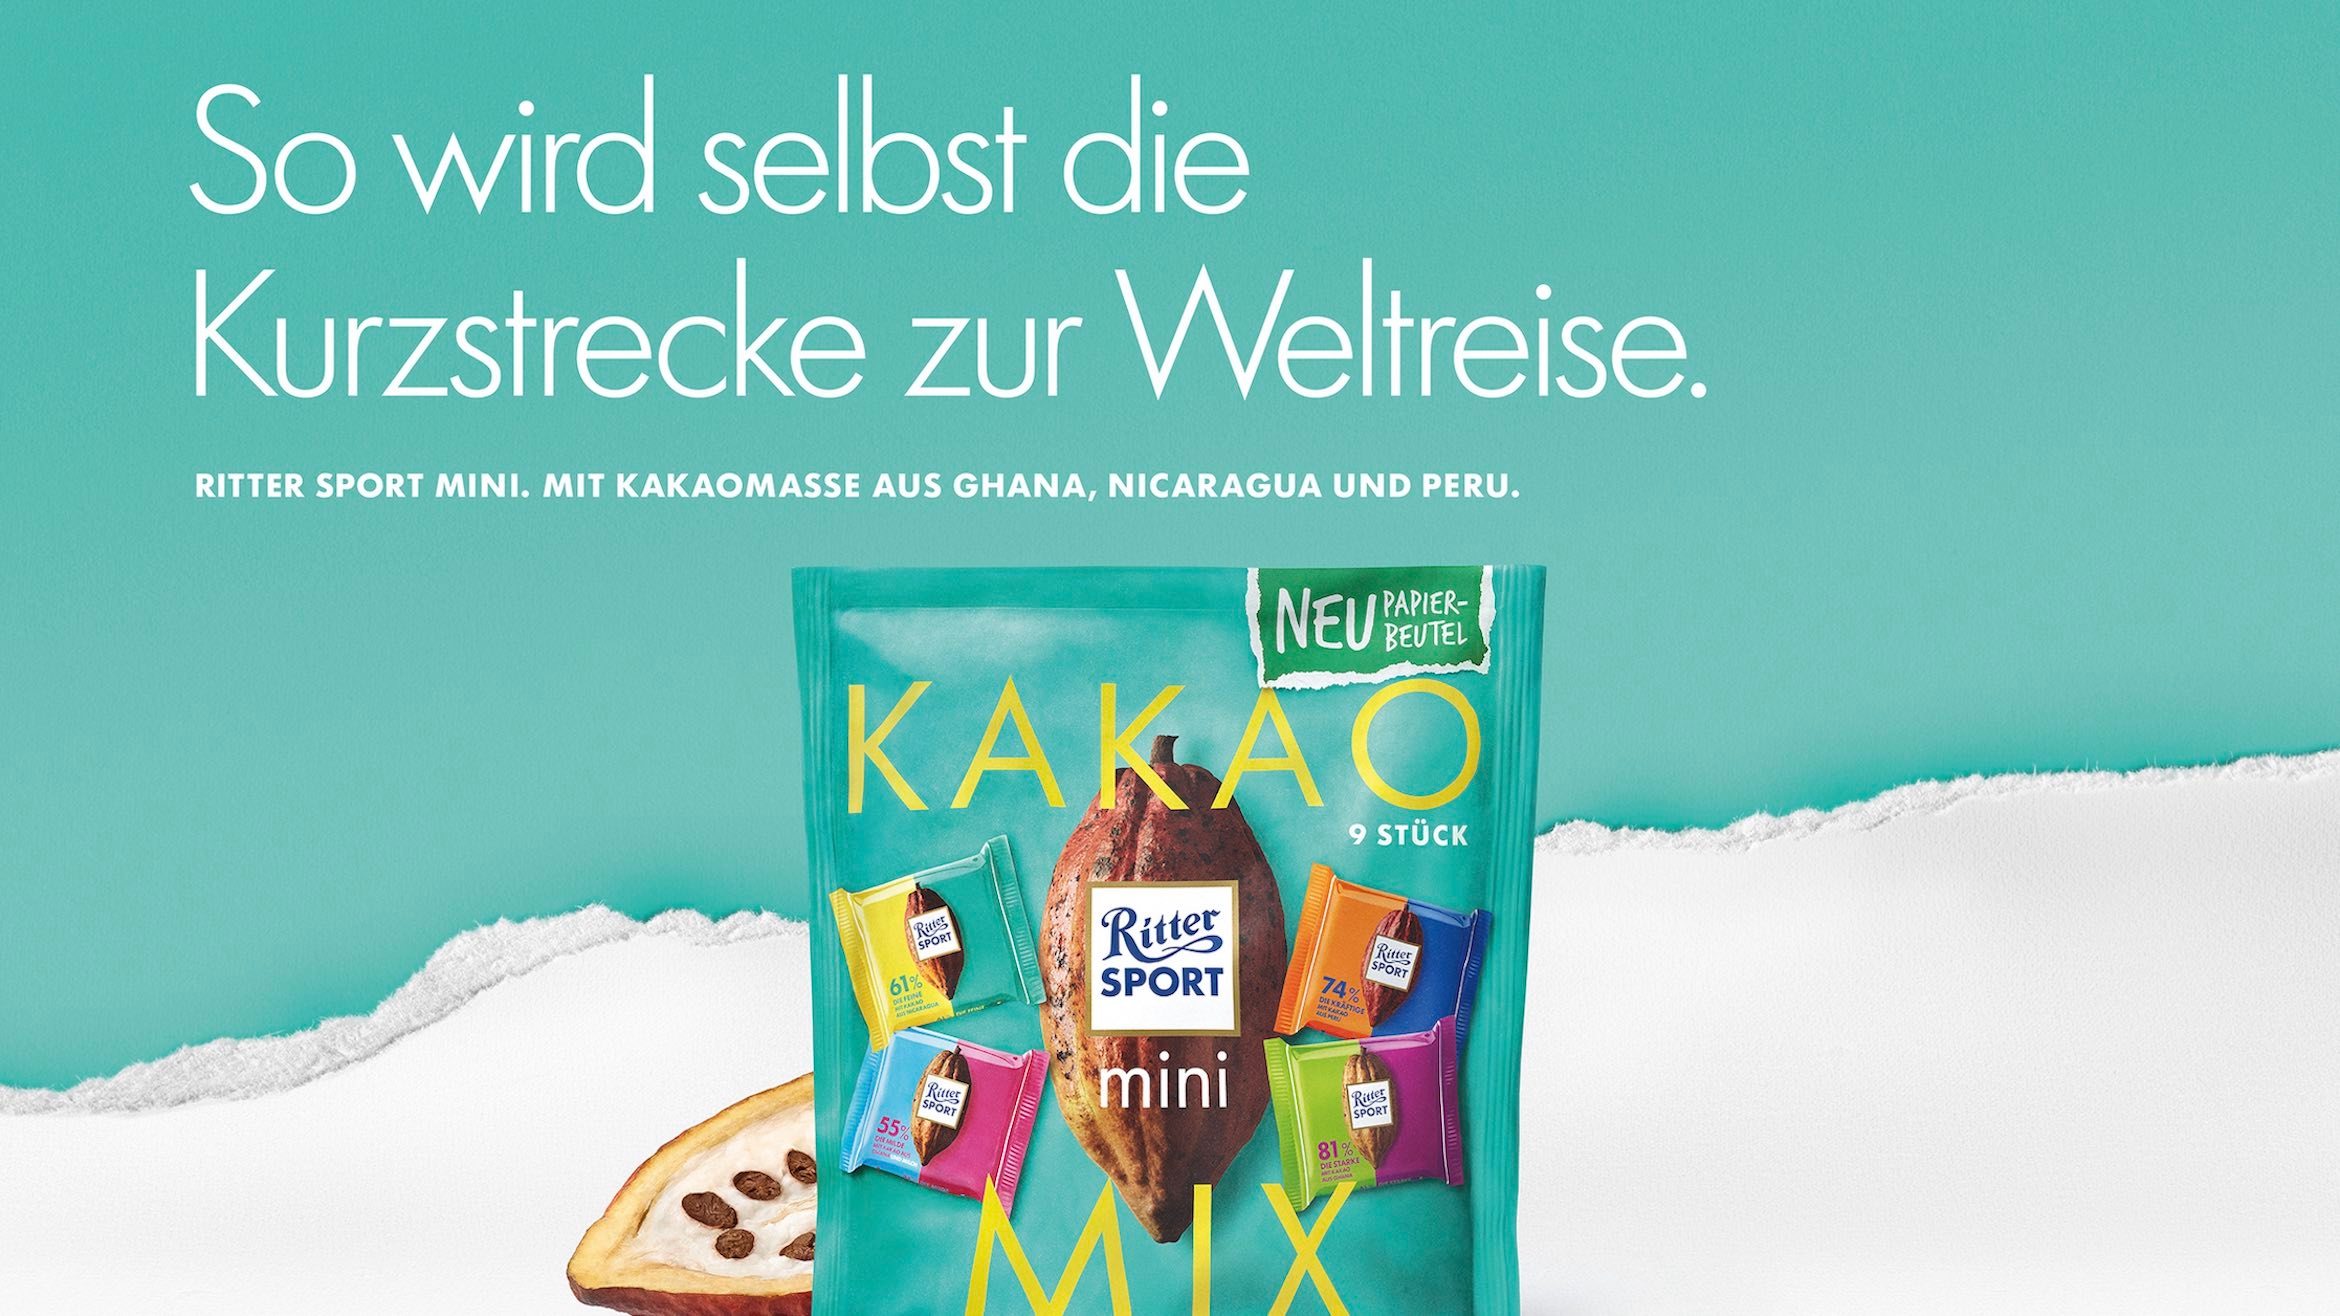 Plakatmotiv "Kakao Mix" aus der Frühjahrskampagne 2021 zu den "Mini Papierbeuteln" von Ritter Sport